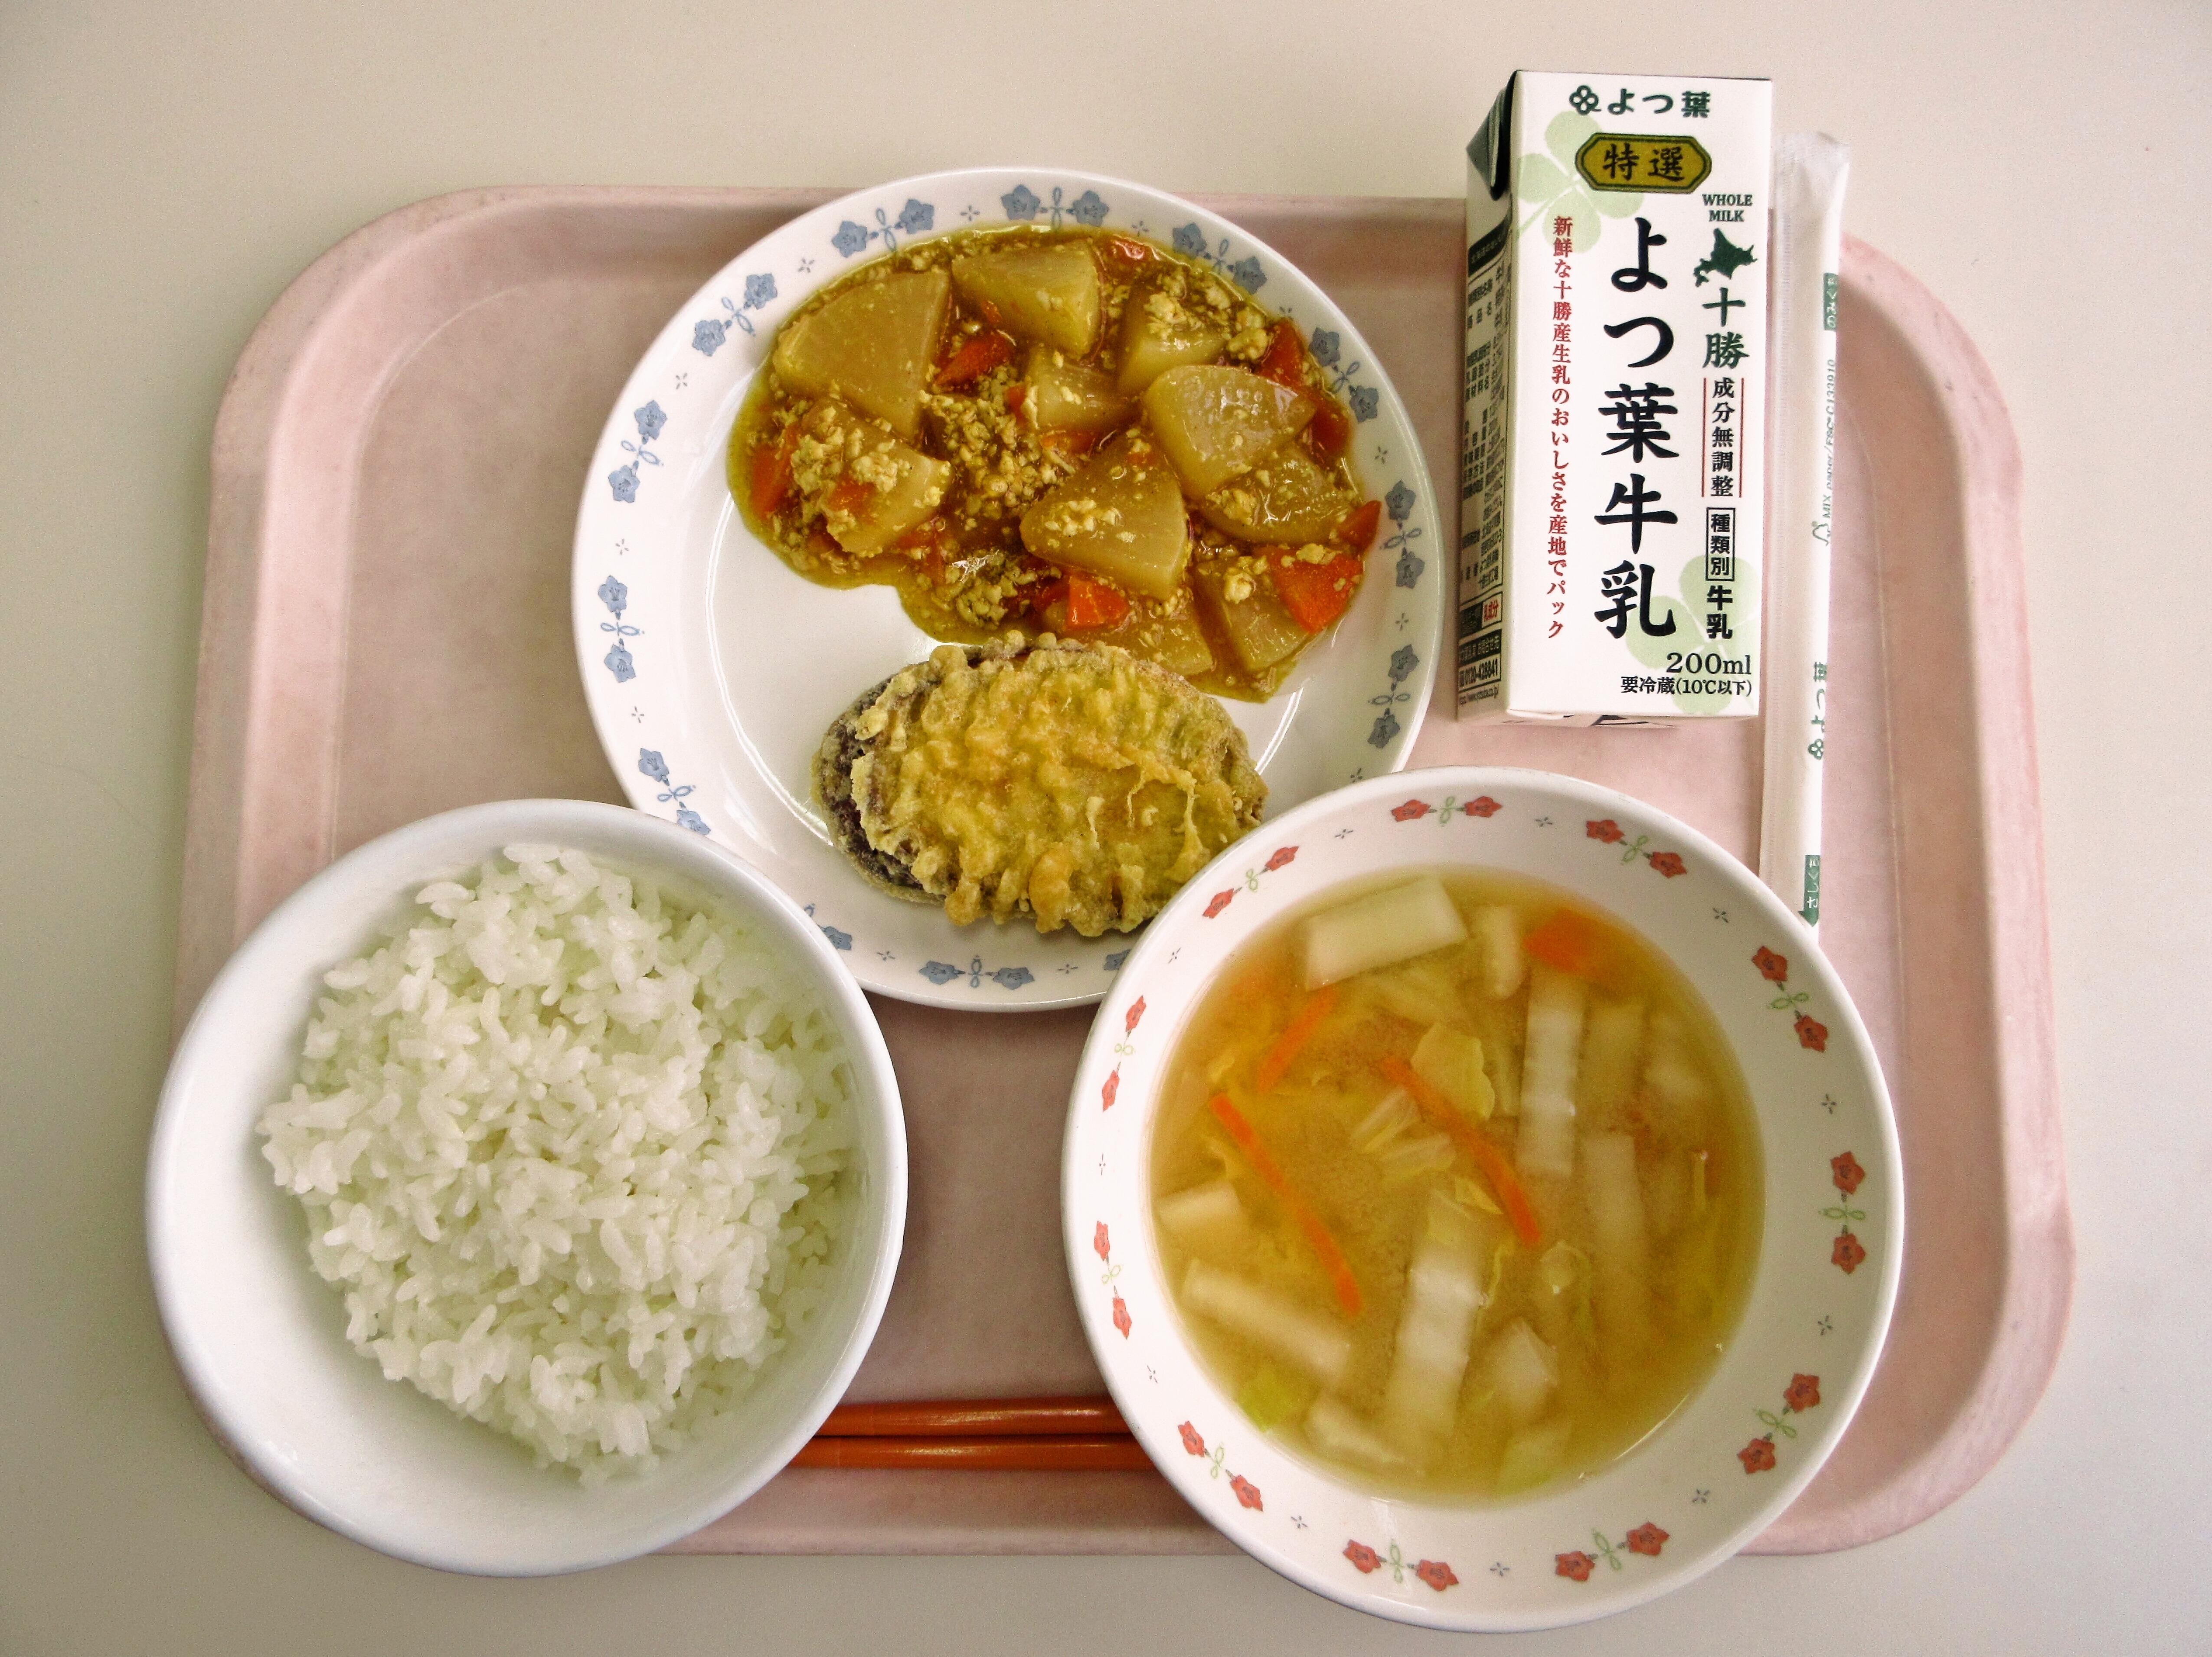 ごはん、みそ汁（白菜・人参）、さつまいも天ぷら、大根のカレーそぼろ煮、牛乳